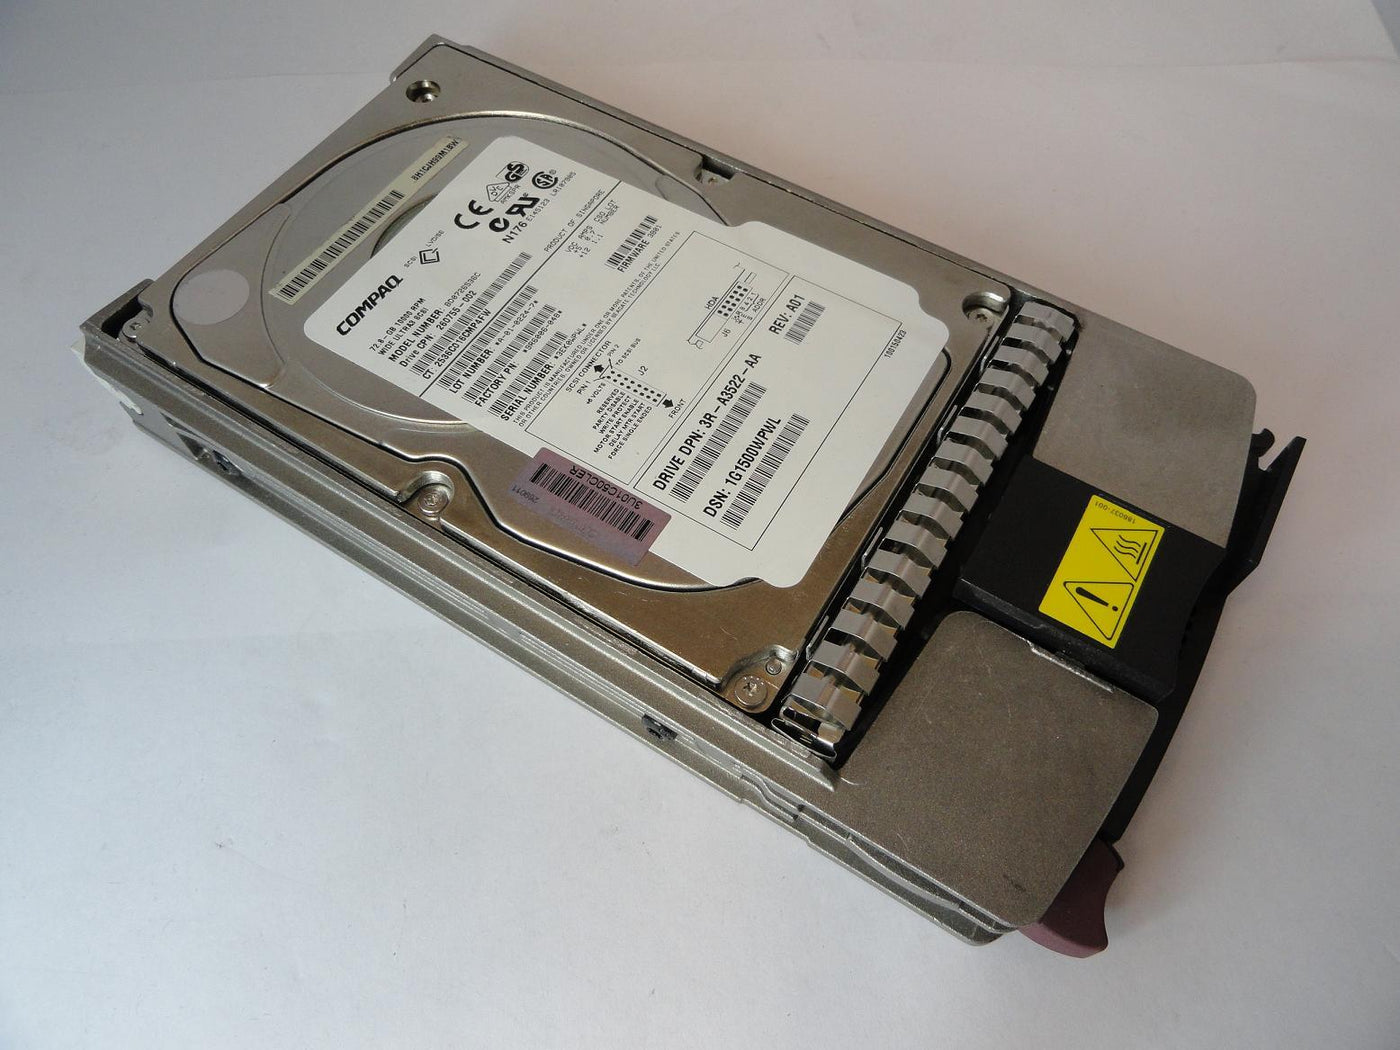 9R6006-048 - Seagate Compaq 72.8GB SCSI 80 Pin 10Krpm 3.5in HDD in Caddy - Refurbished